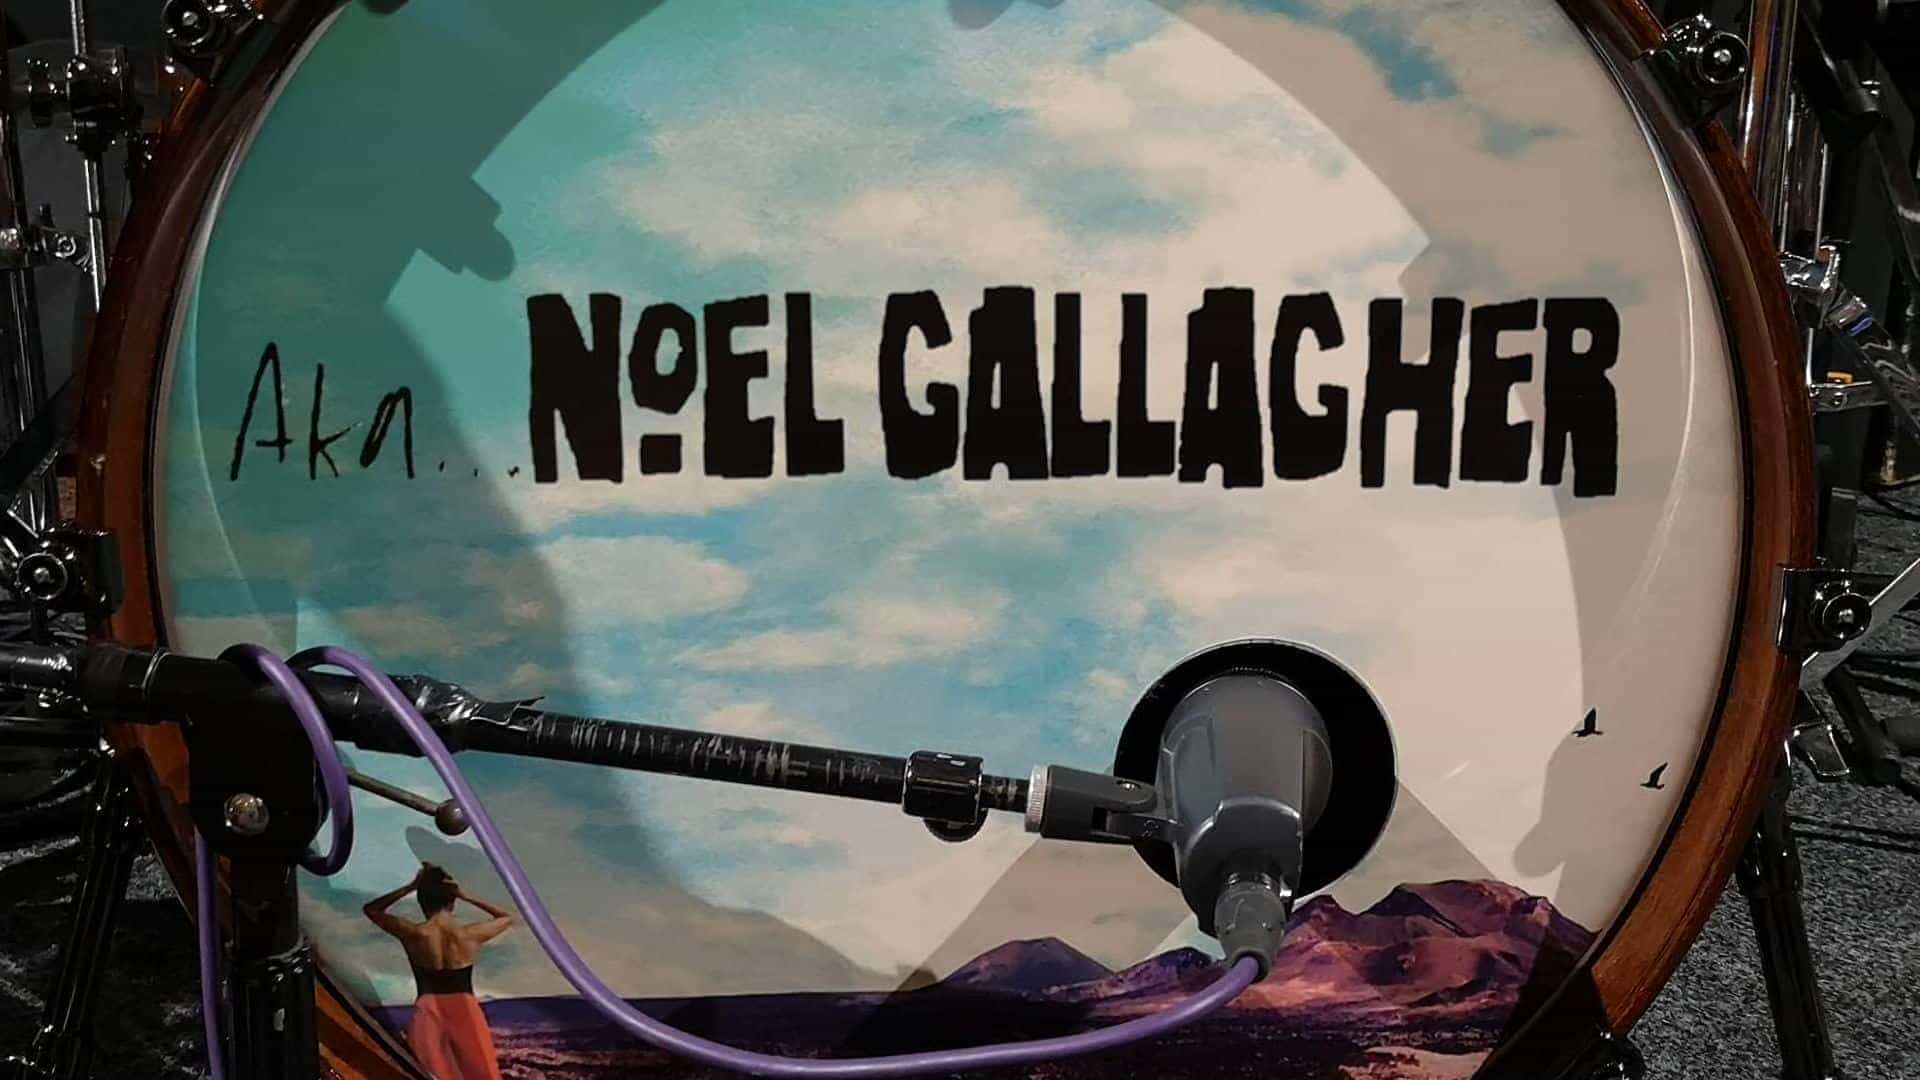 Aka... Noel Gallagher - Noel Gallagher Tribute Band